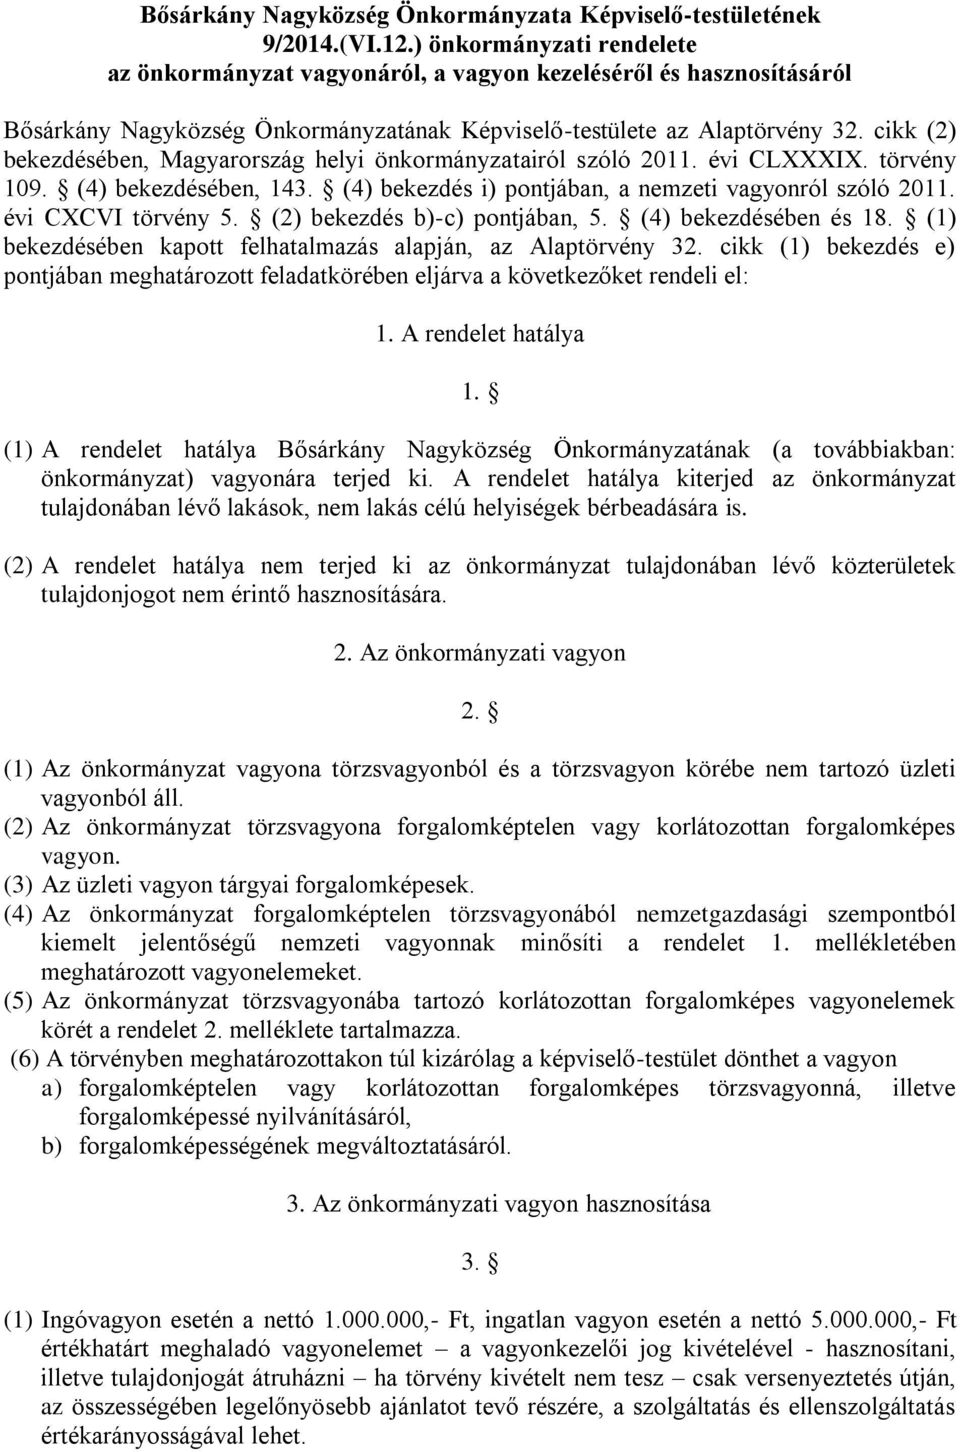 cikk (2) bekezdésében, Magyarország helyi önkormányzatairól szóló 2011. évi CLXXXIX. törvény 109. (4) bekezdésében, 143. (4) bekezdés i) pontjában, a nemzeti vagyonról szóló 2011. évi CXCVI törvény 5.